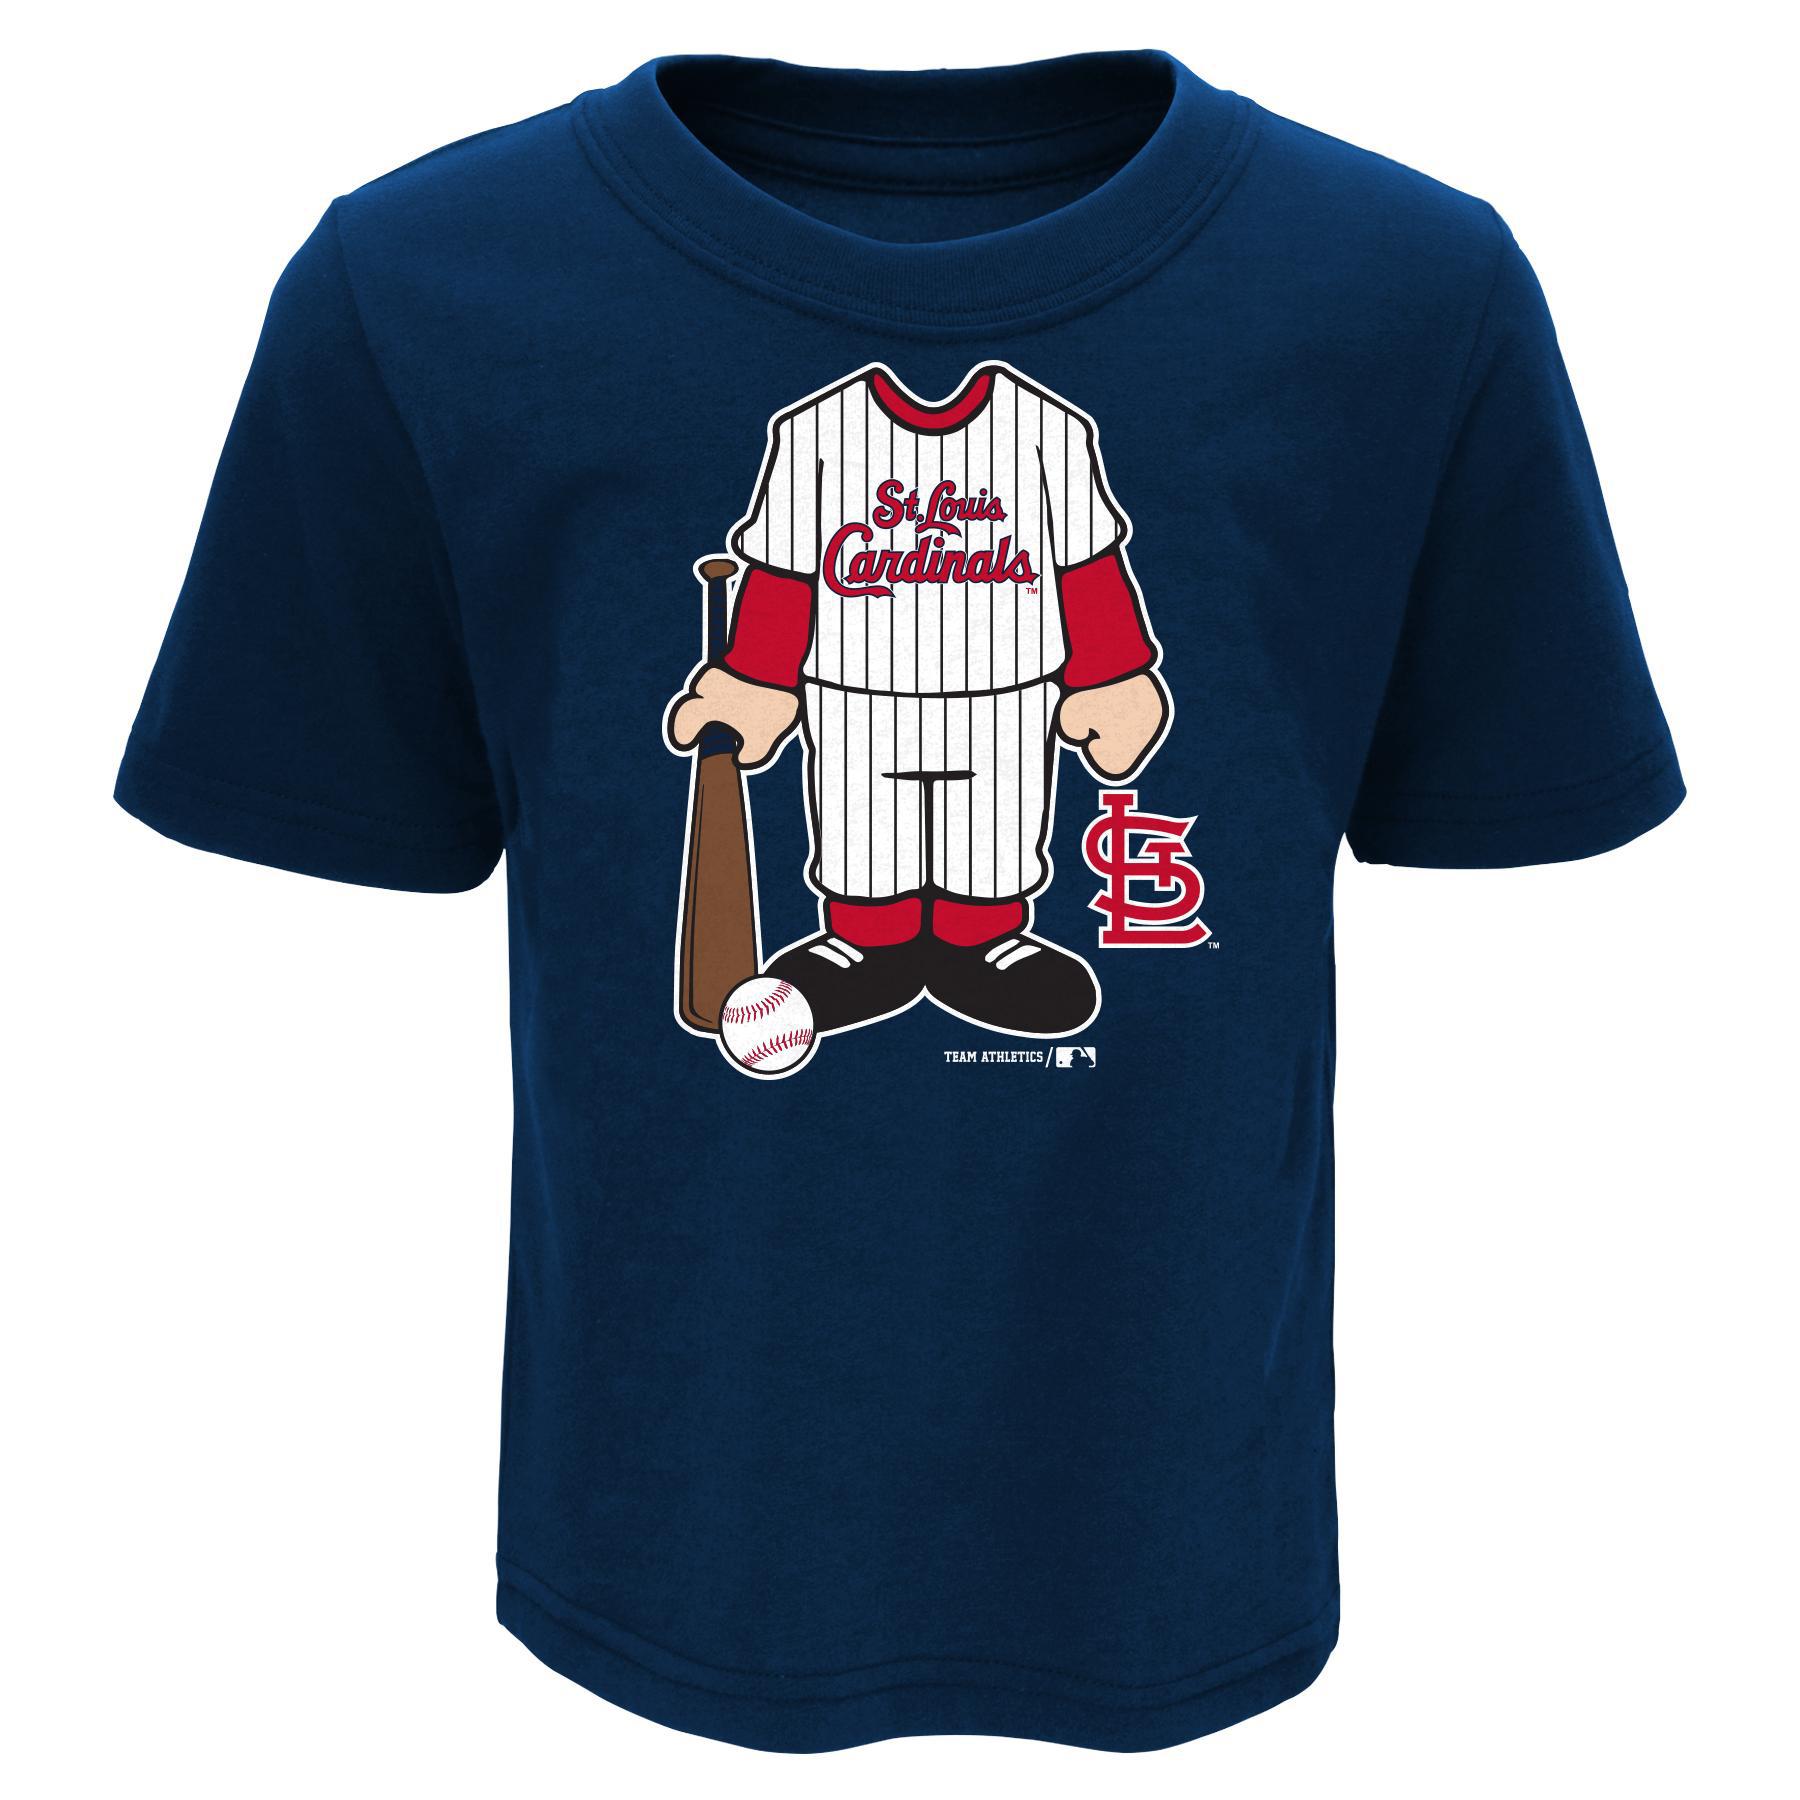 MLB Toddler Boys' T-Shirt - St. Louis Cardinals